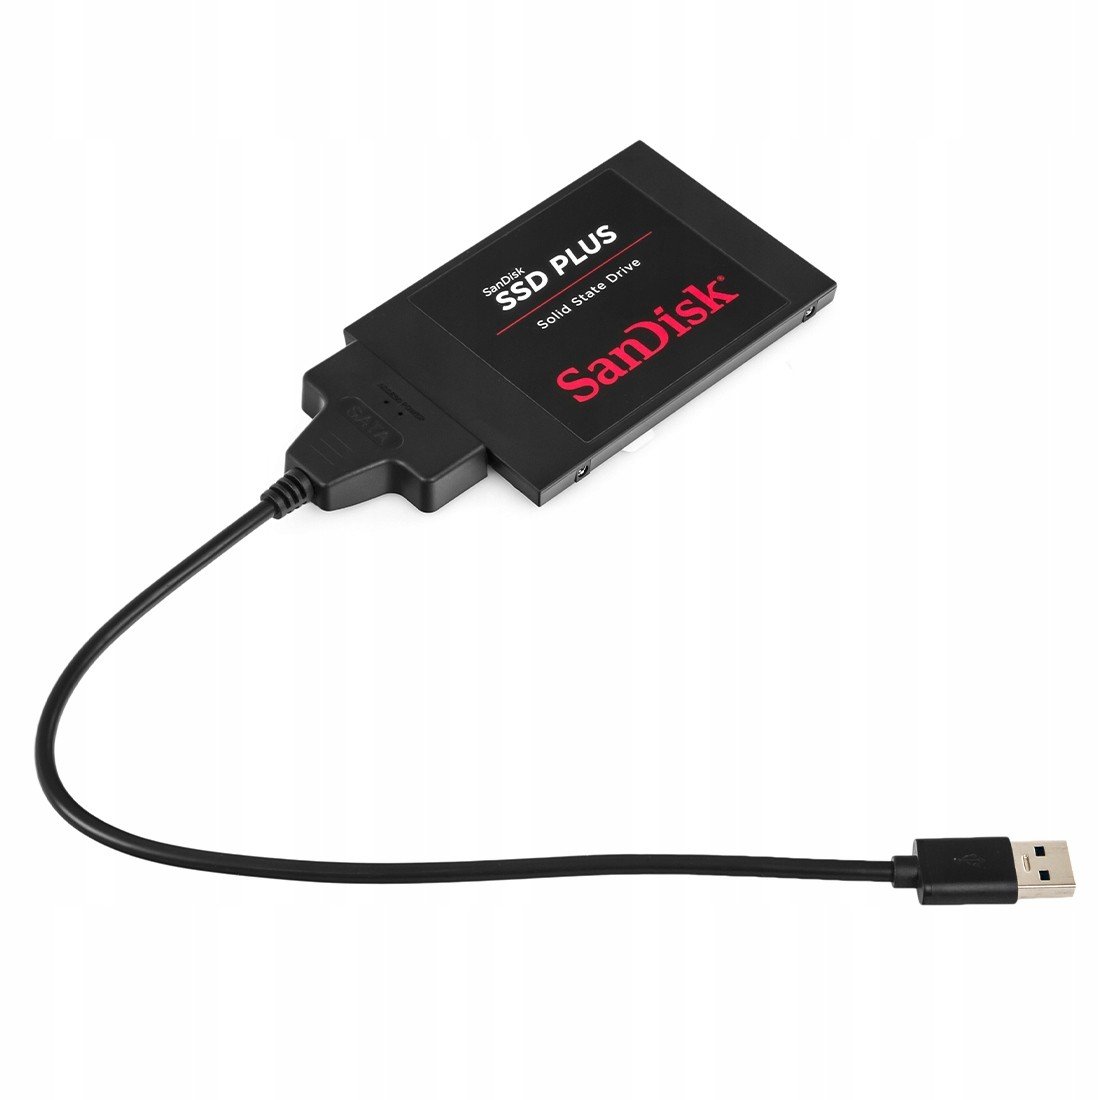 Externí disk Ssd 240GB SanDisk s Usb 3.0 adaptérem pro tunery dekodérů